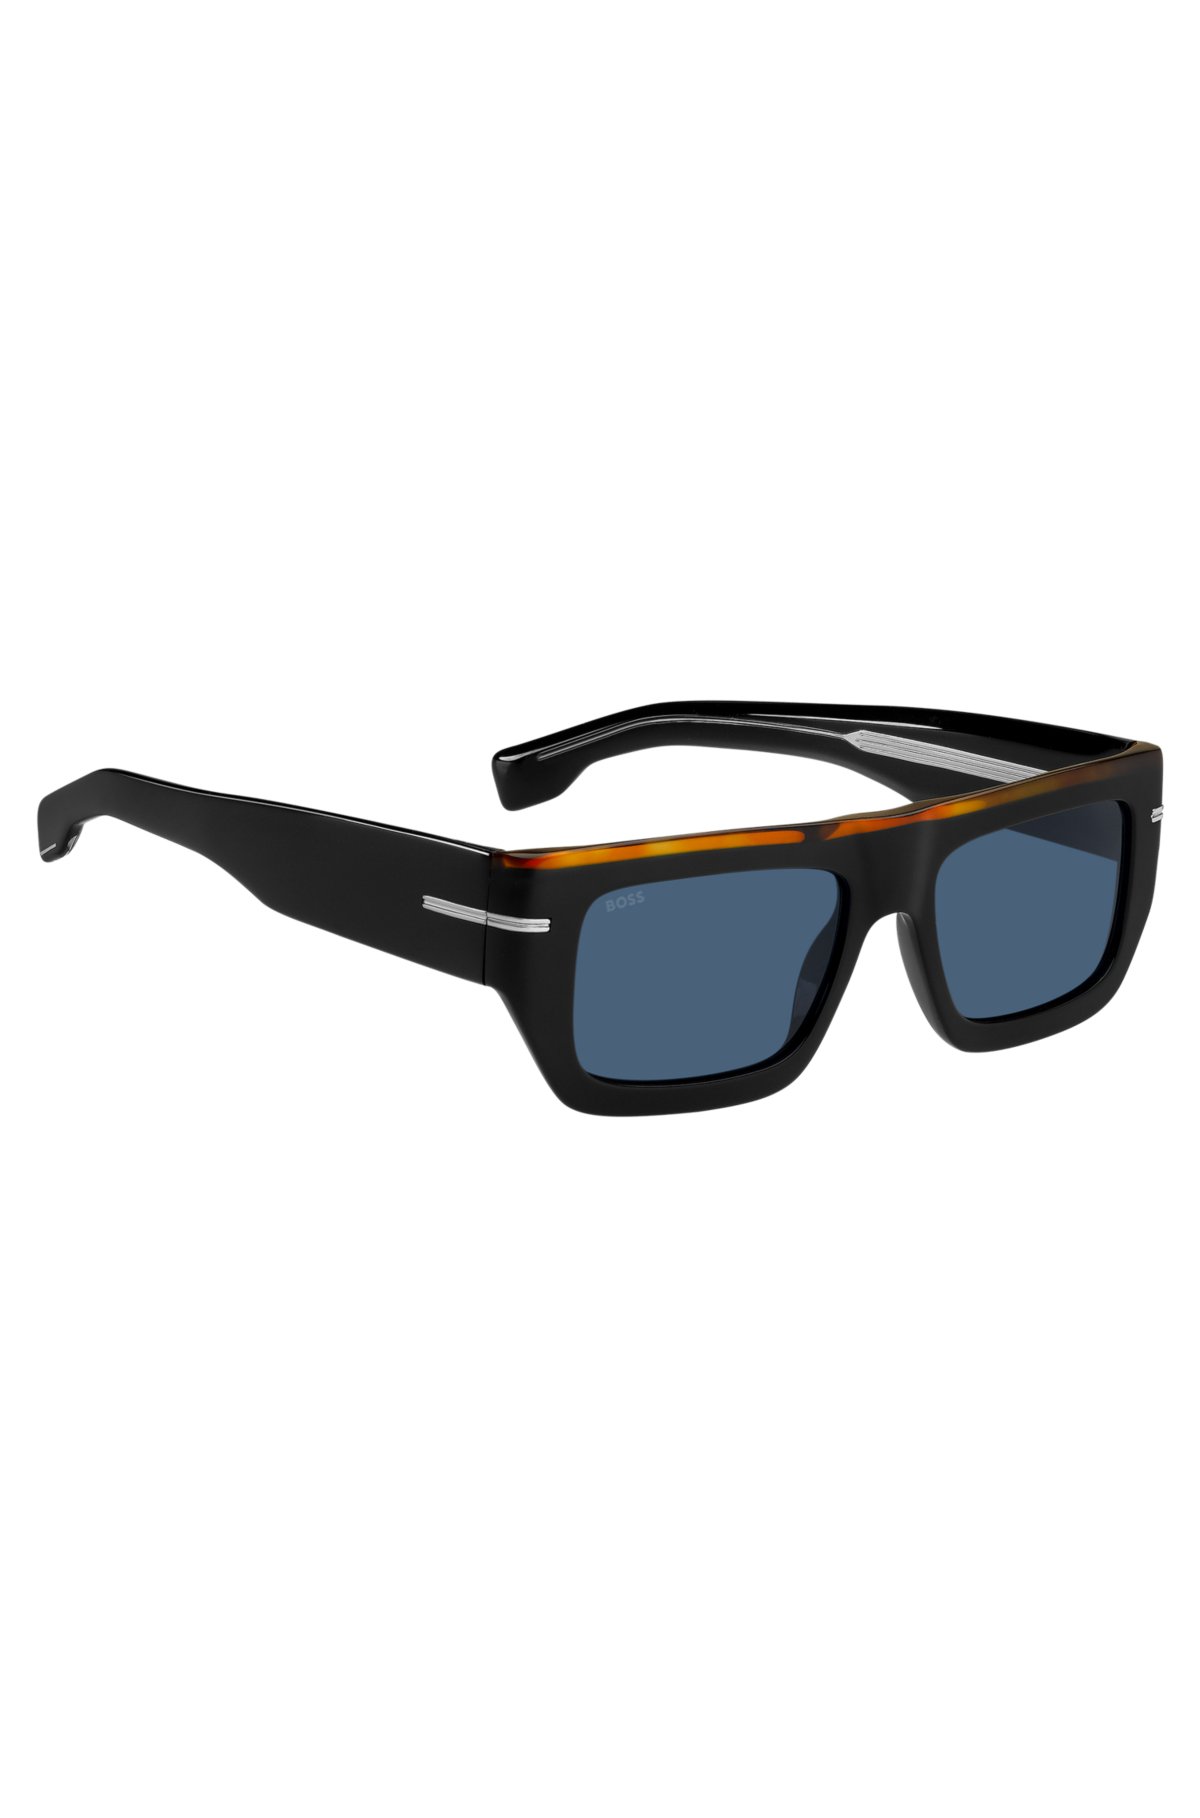 Spectacle Lægge sammen landing BOSS - Solbriller i sort acetat med farvet kant